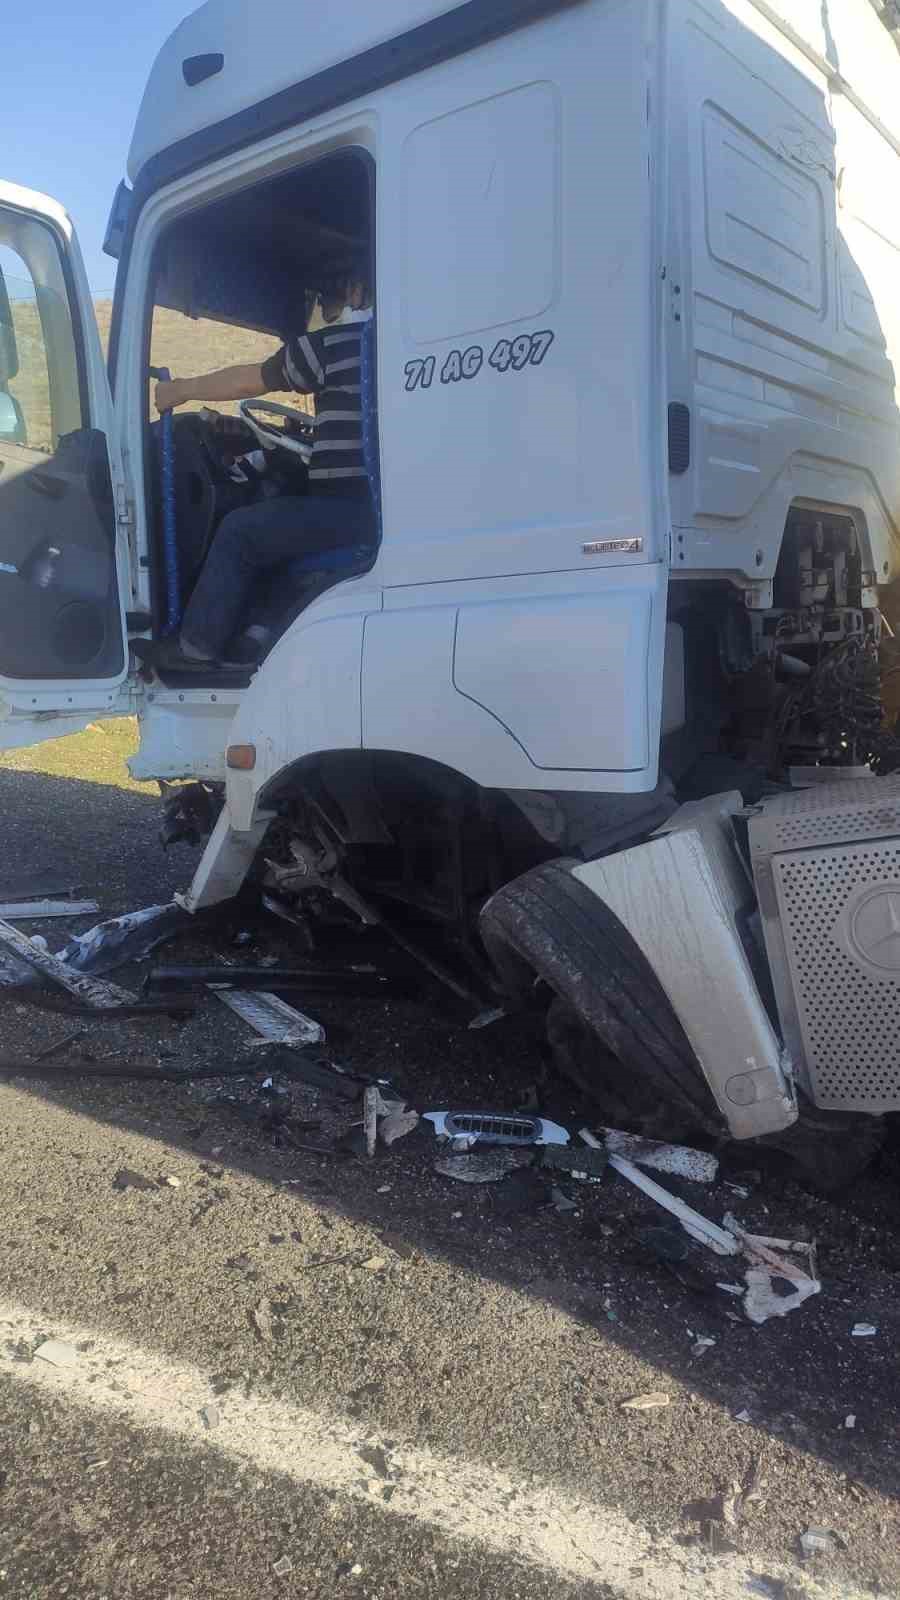 Mardin’de tanker ile otomobil çarpıştı: Öğretmen hayatını kaybetti
